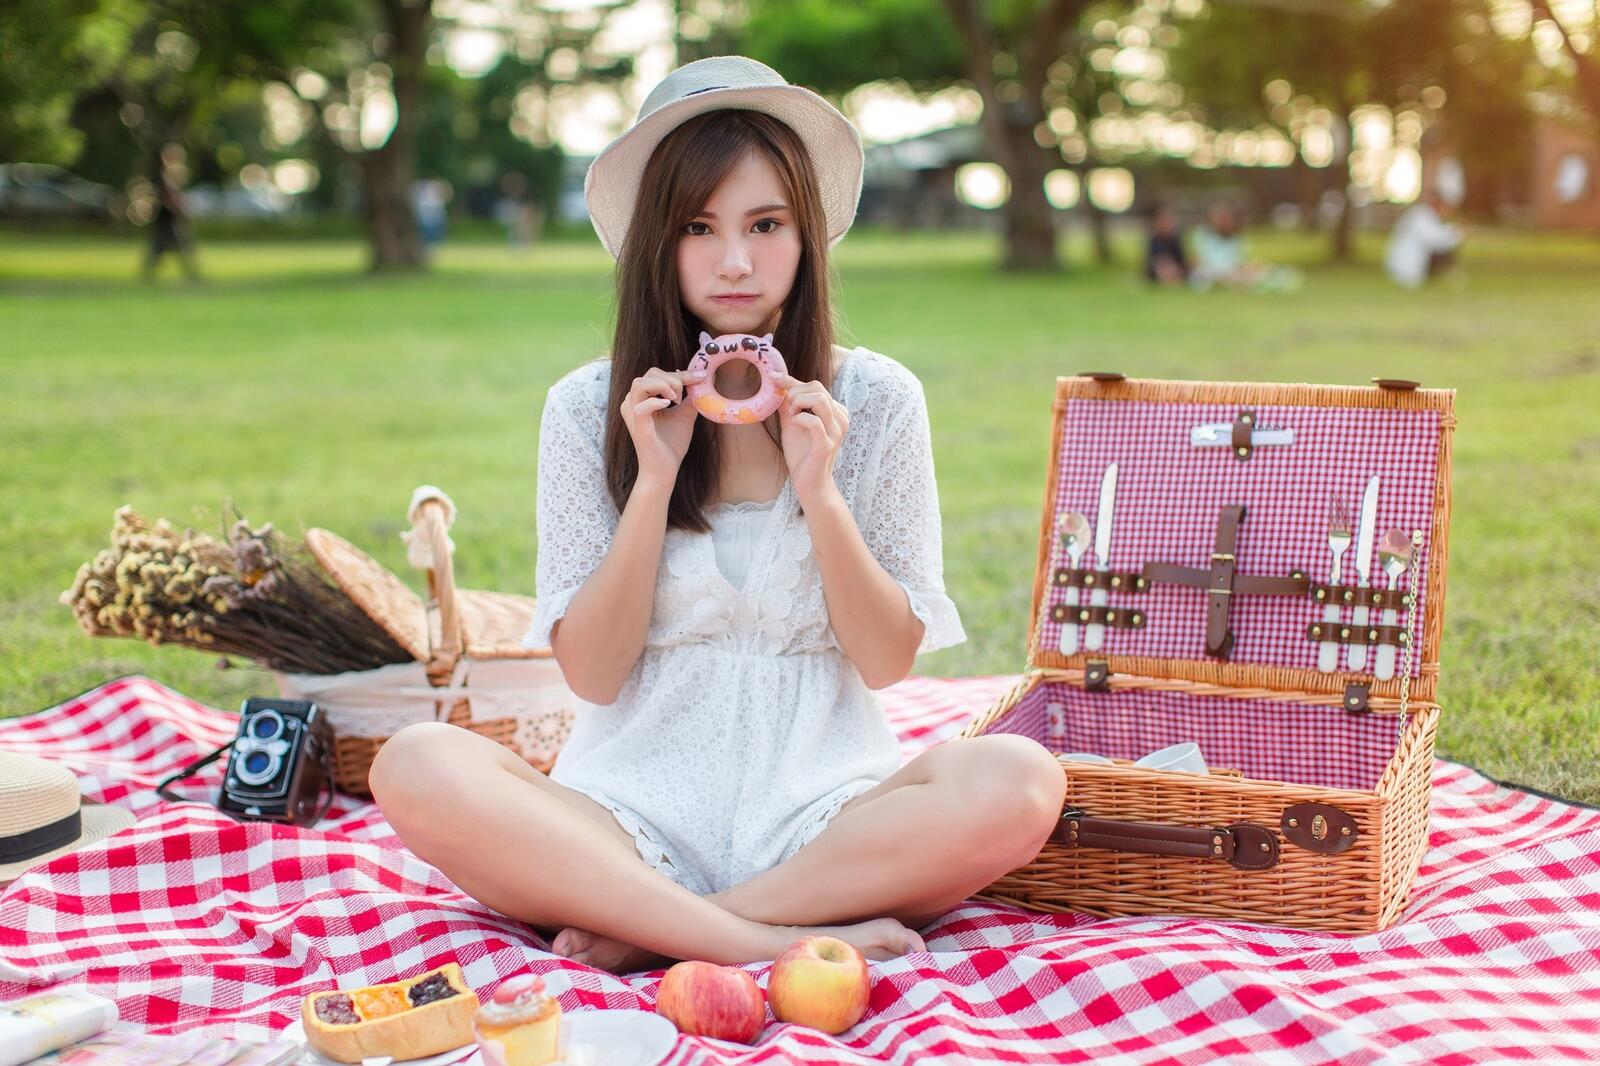 免费照片亚洲女孩在野餐时吃甜甜圈